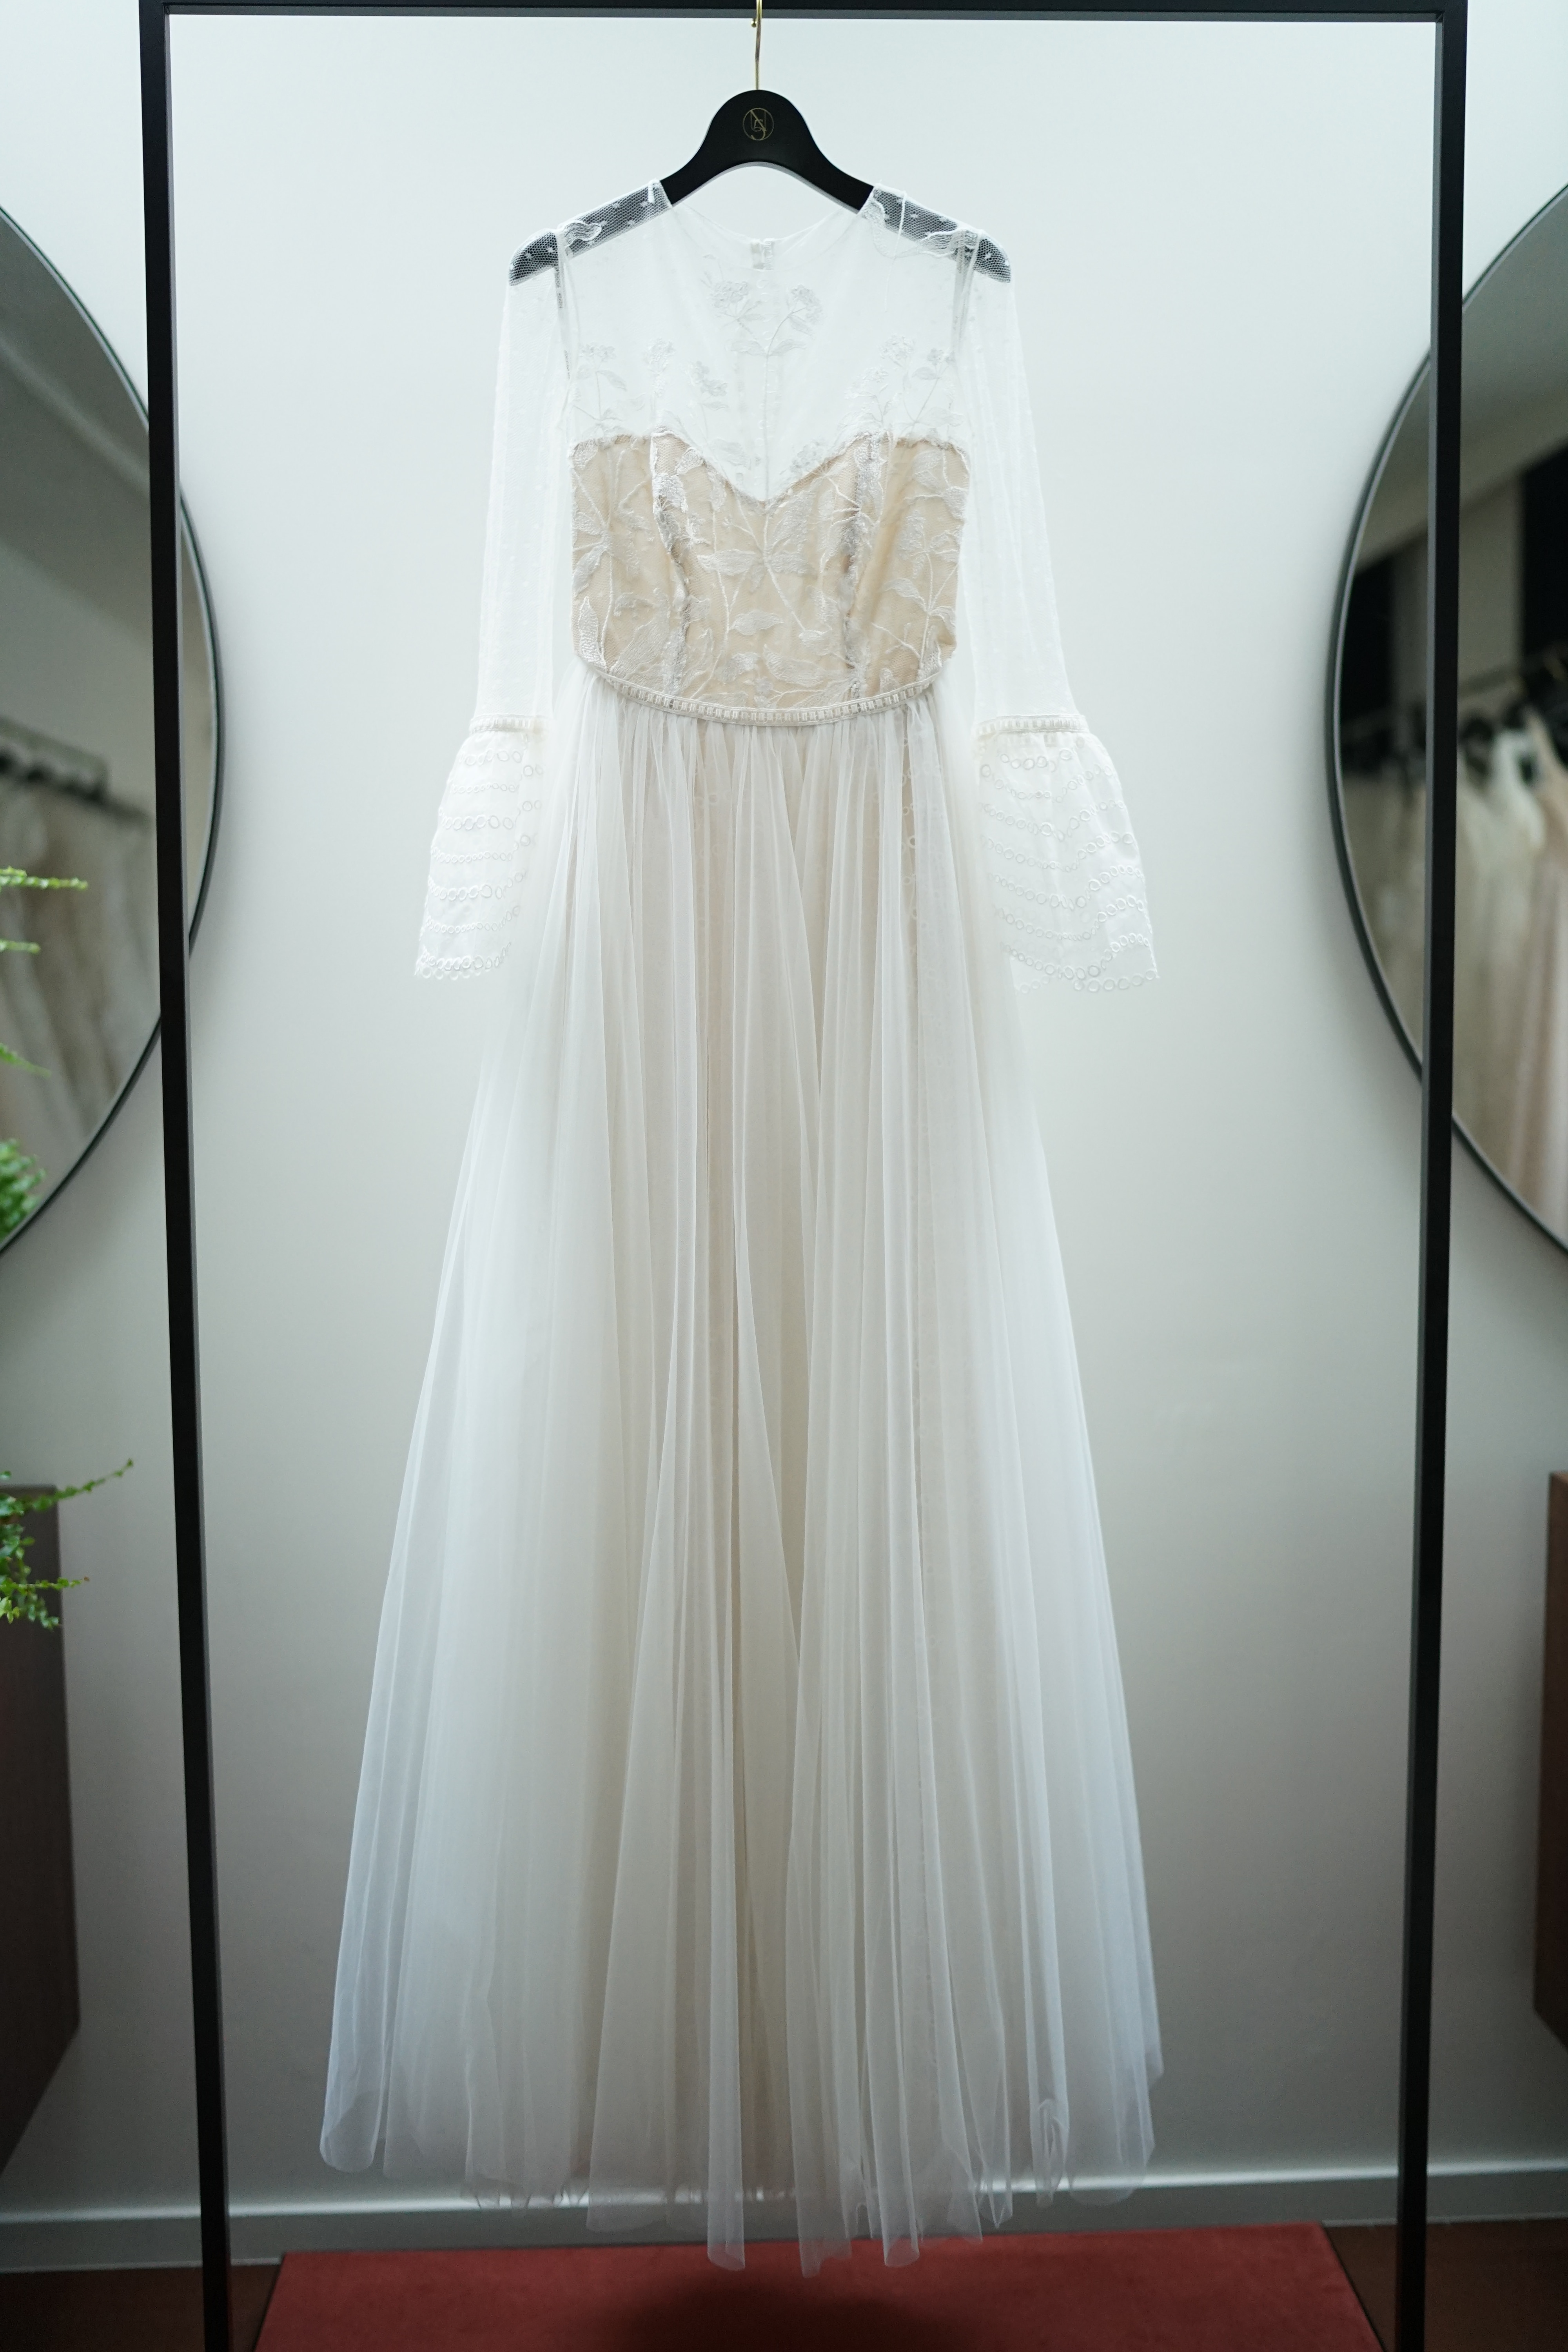 進化し続けるウエディングドレスの世界 山城葉子 Yoko Yamashiro 第2回 日本人が似合う 海外ブランドのウエディングドレス マイナビウエディング